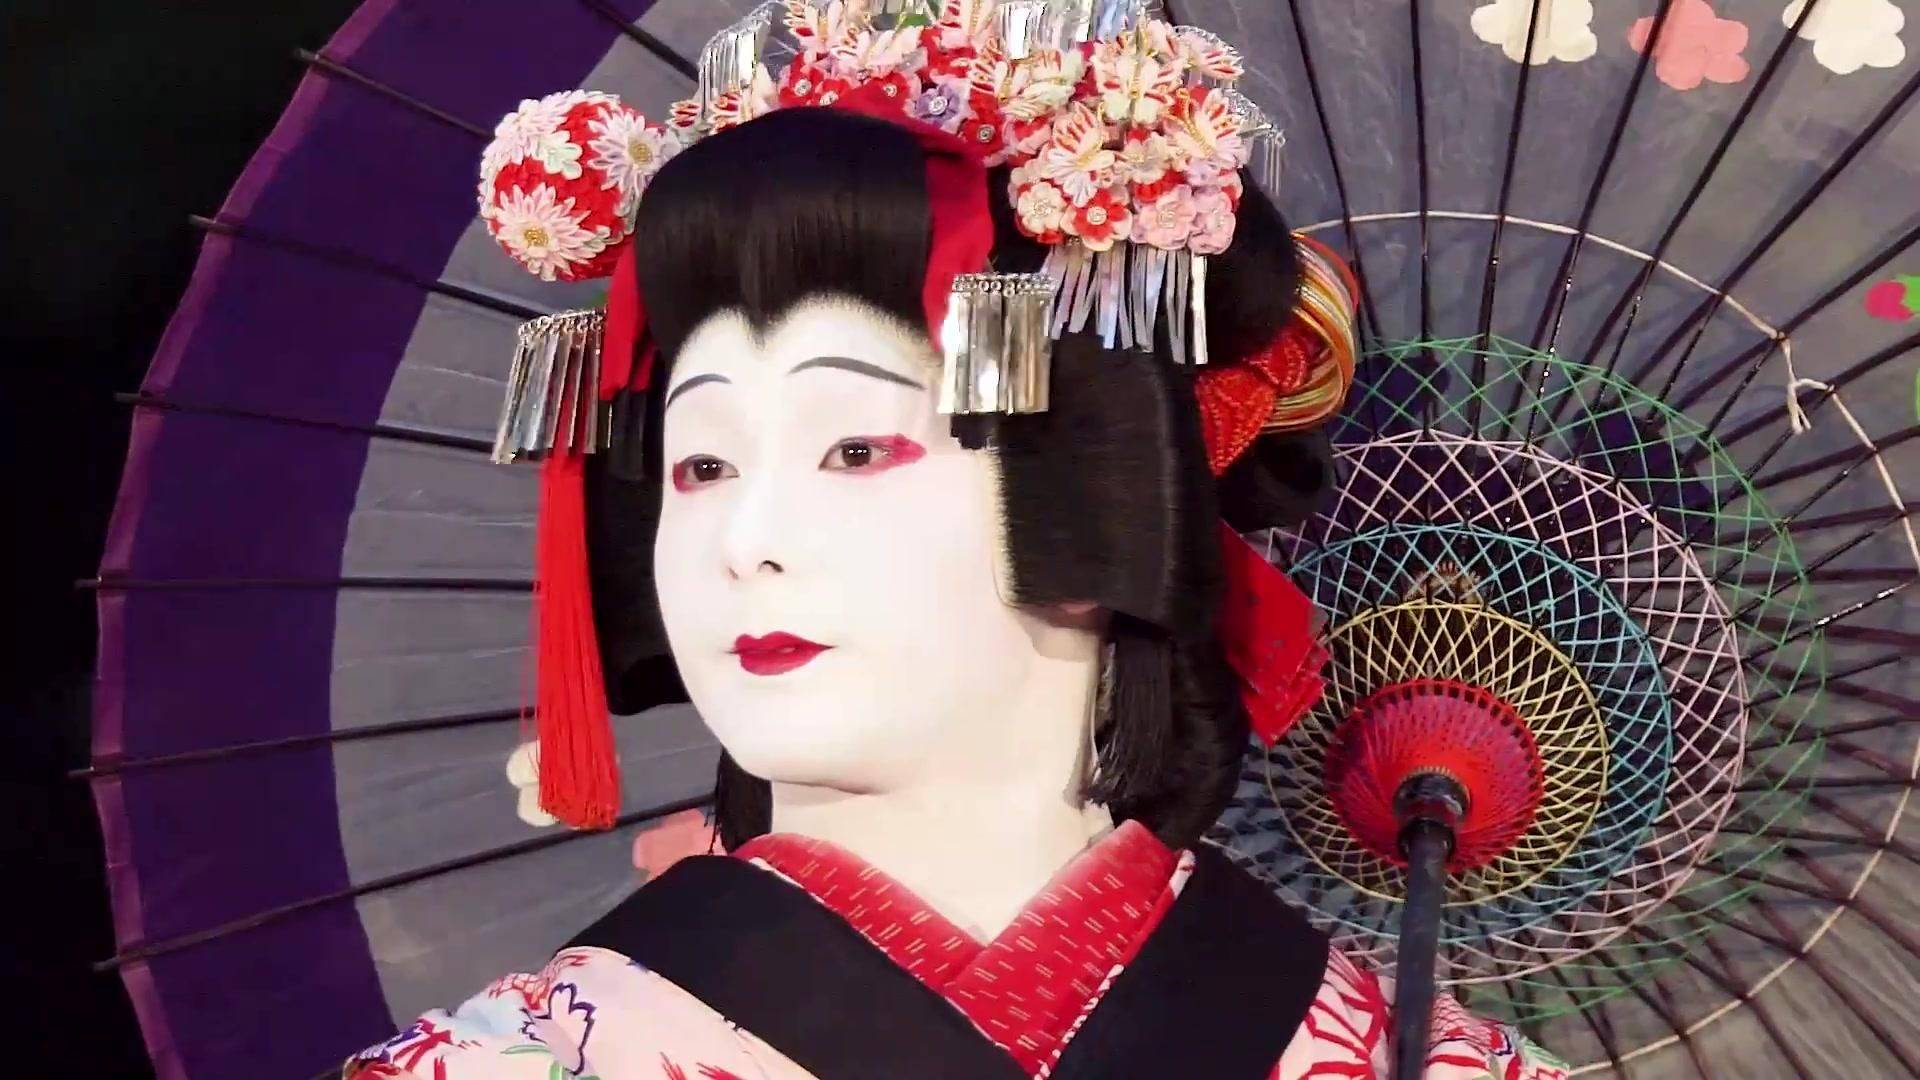 歌舞伎脸谱综合症图片